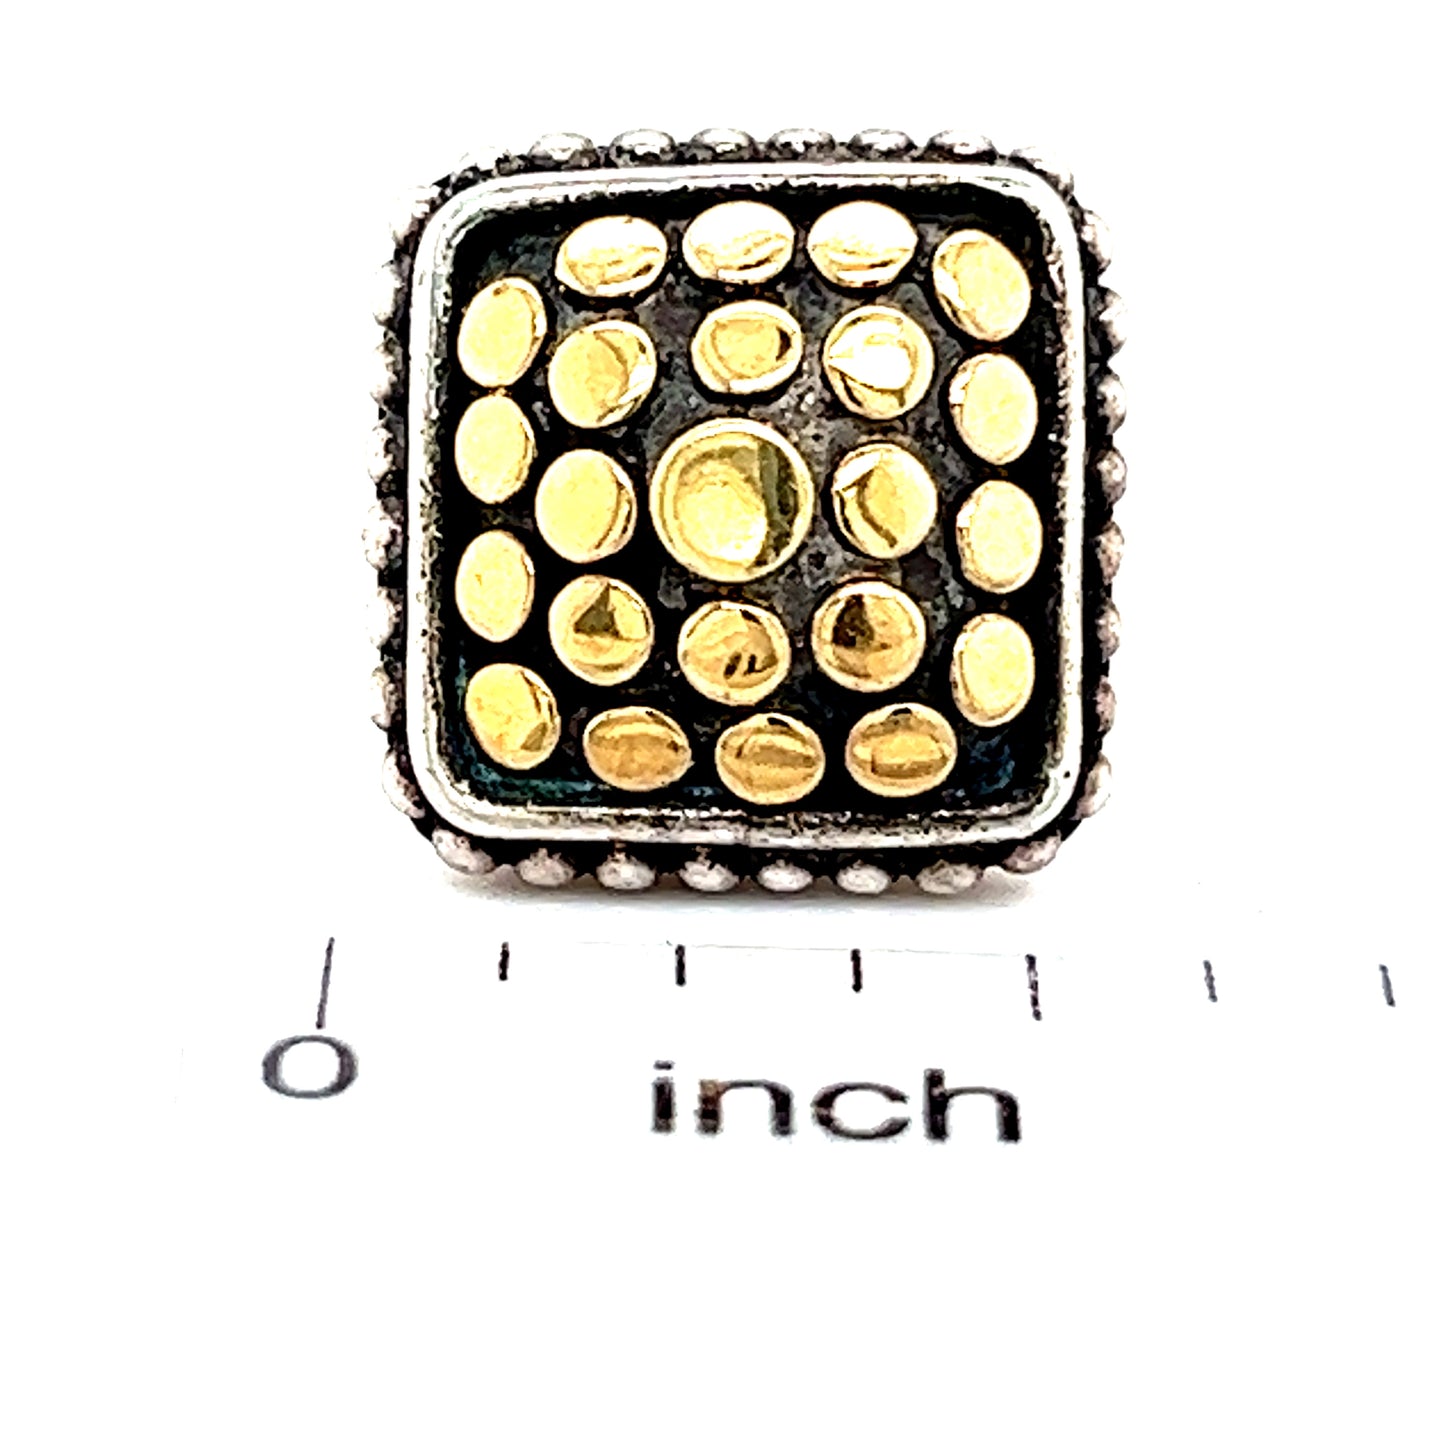 John Hardy Estate Single Earring With Plastic Disk Back 18k Y Gold + Silver JH29 - Certified Fine Jewelry